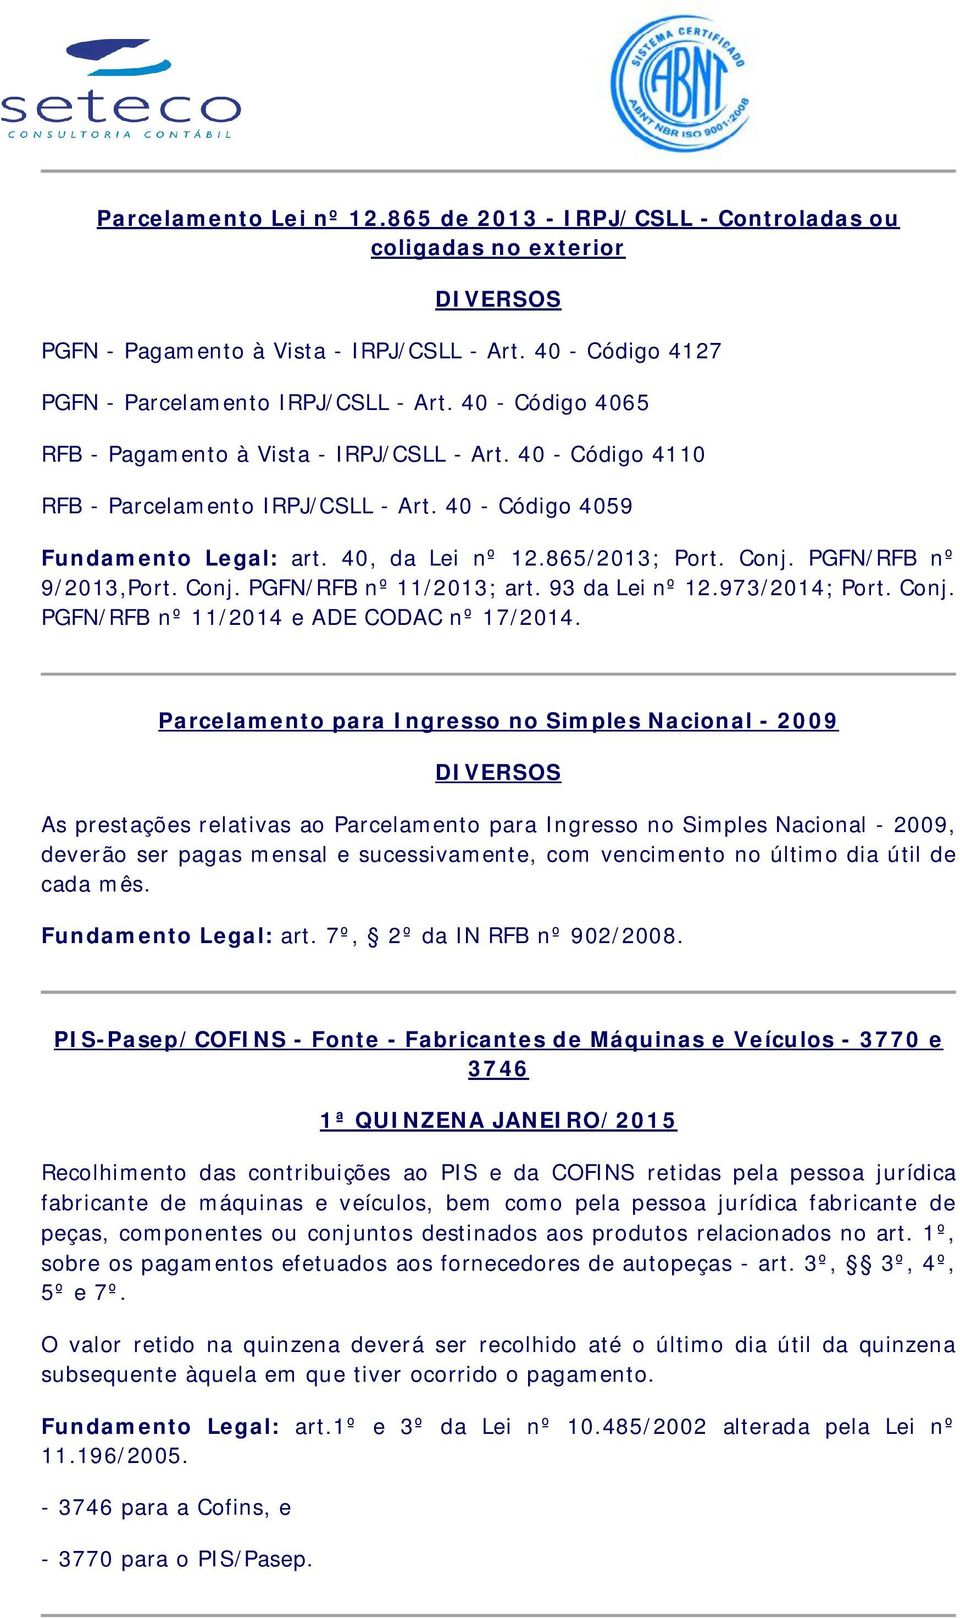 PGFN/RFB nº 9/2013,Port. Conj. PGFN/RFB nº 11/2013; art. 93 da Lei nº 12.973/2014; Port. Conj. PGFN/RFB nº 11/2014 e ADE CODAC nº 17/2014.